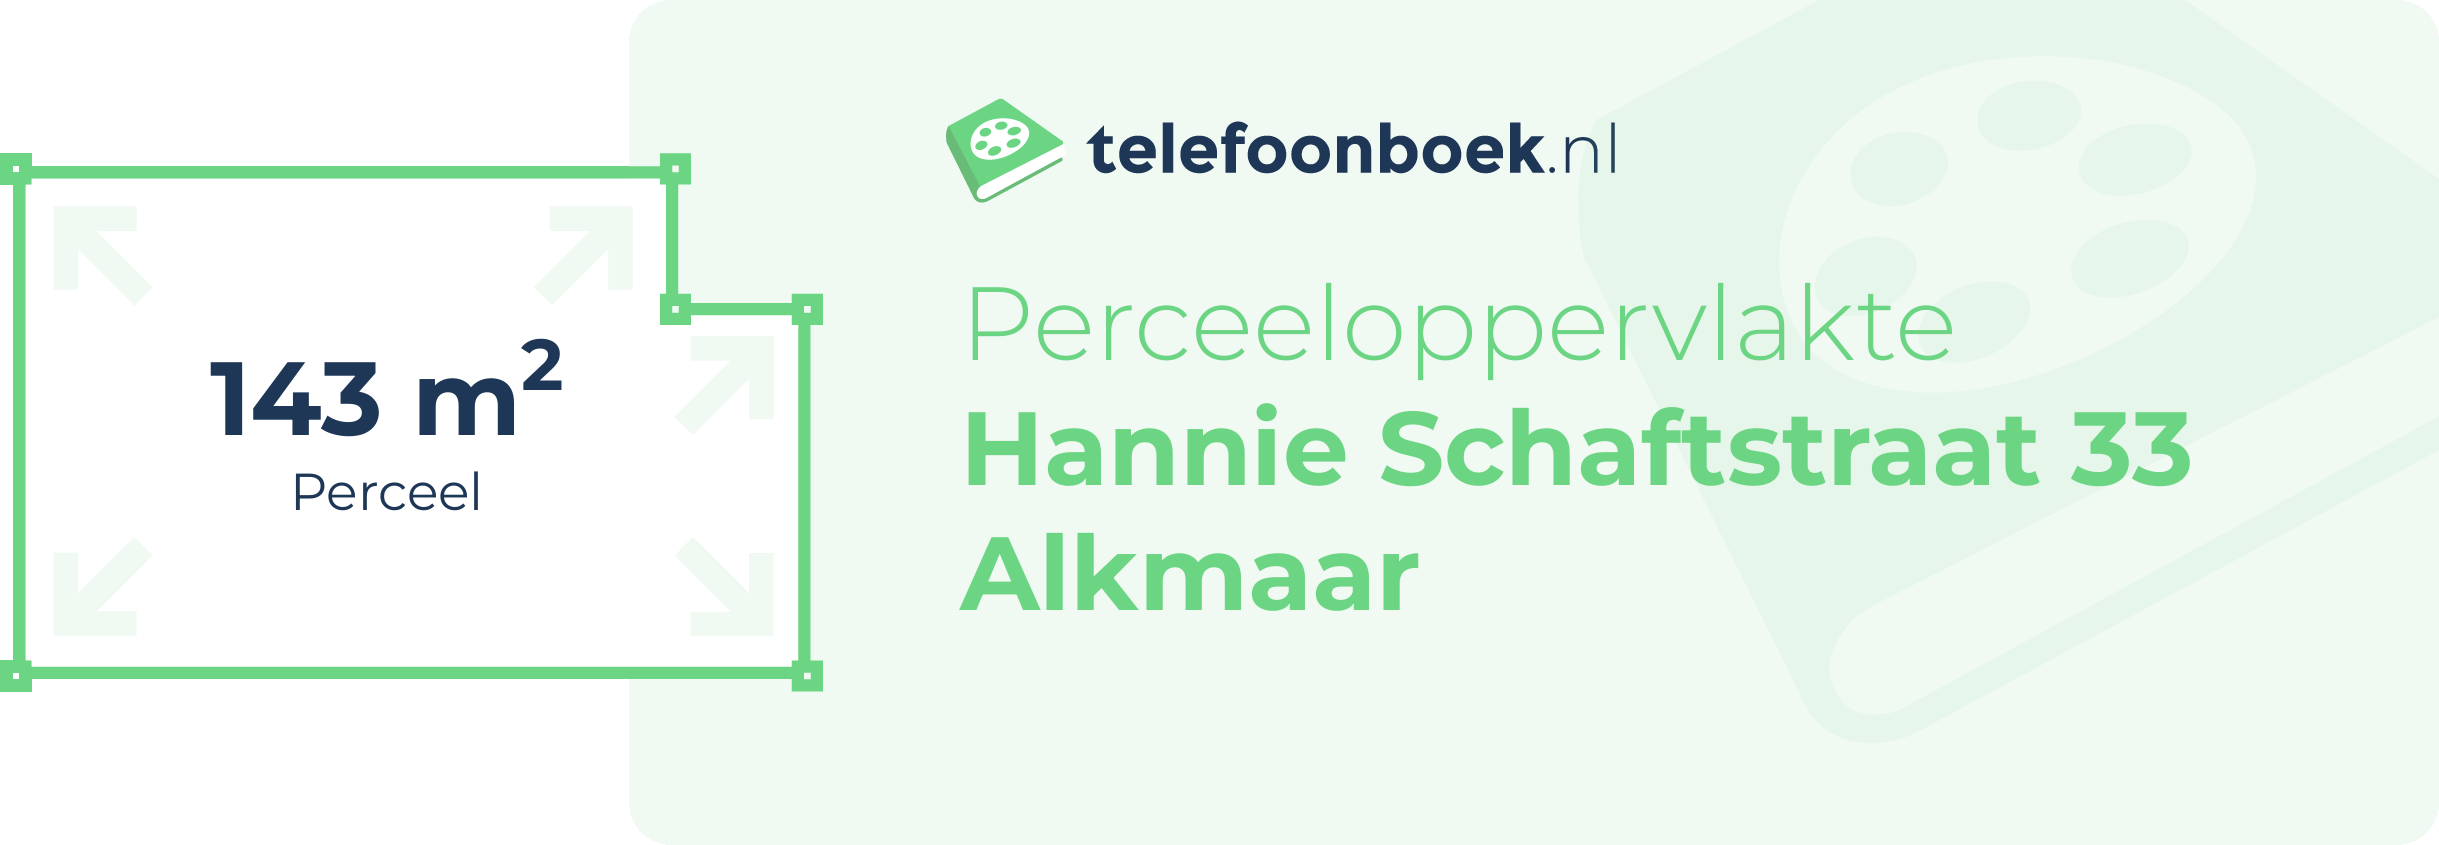 Perceeloppervlakte Hannie Schaftstraat 33 Alkmaar